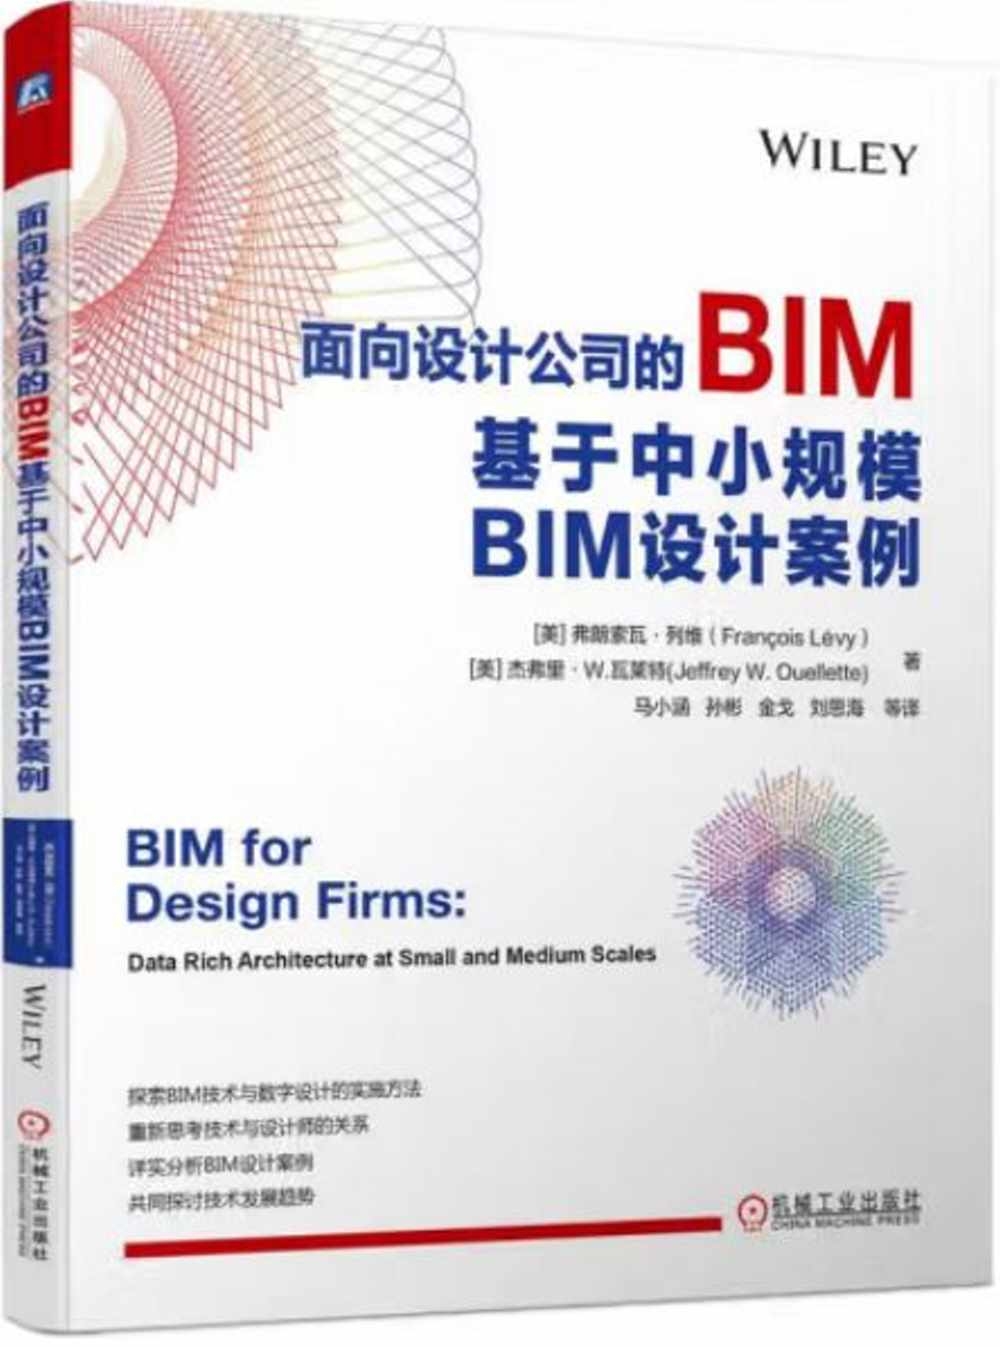 面向設計公司的BIM：基於中小規模BIM設計案例